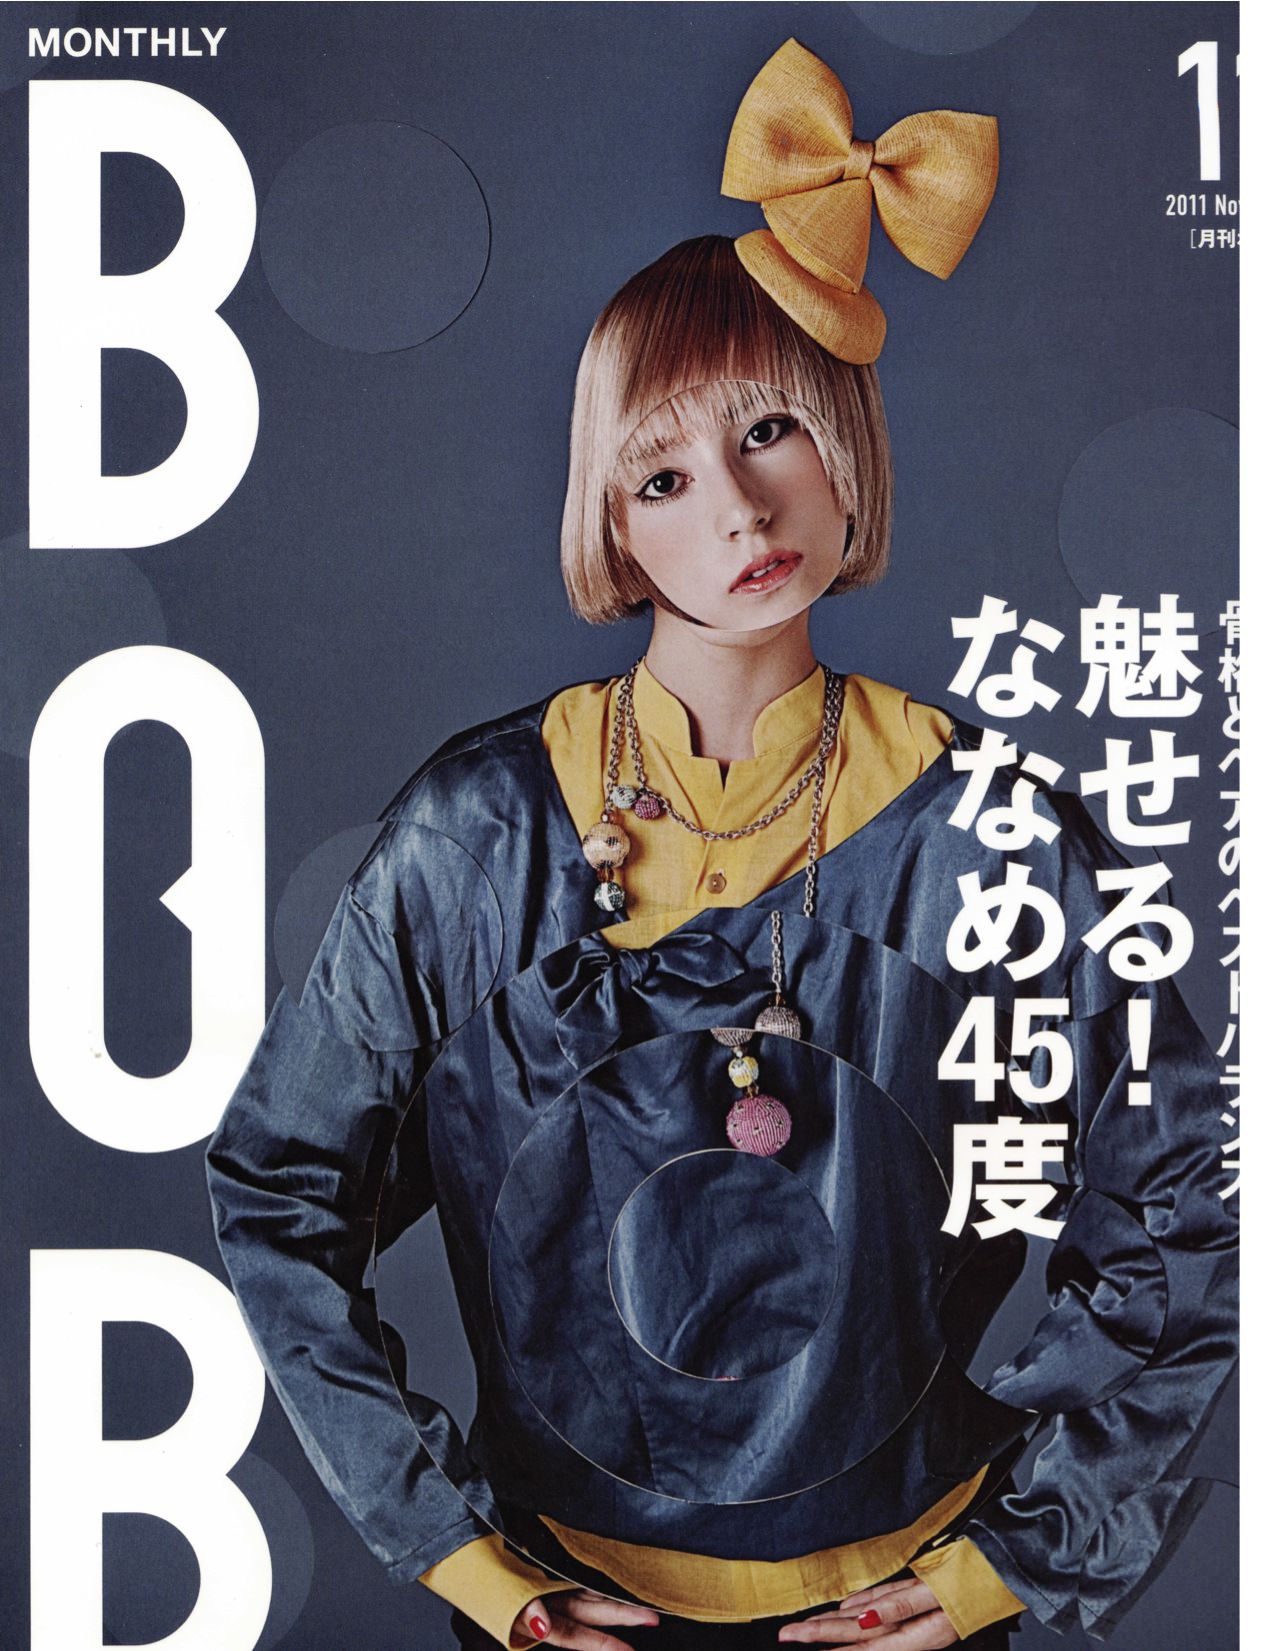 BOB Magazine Cover